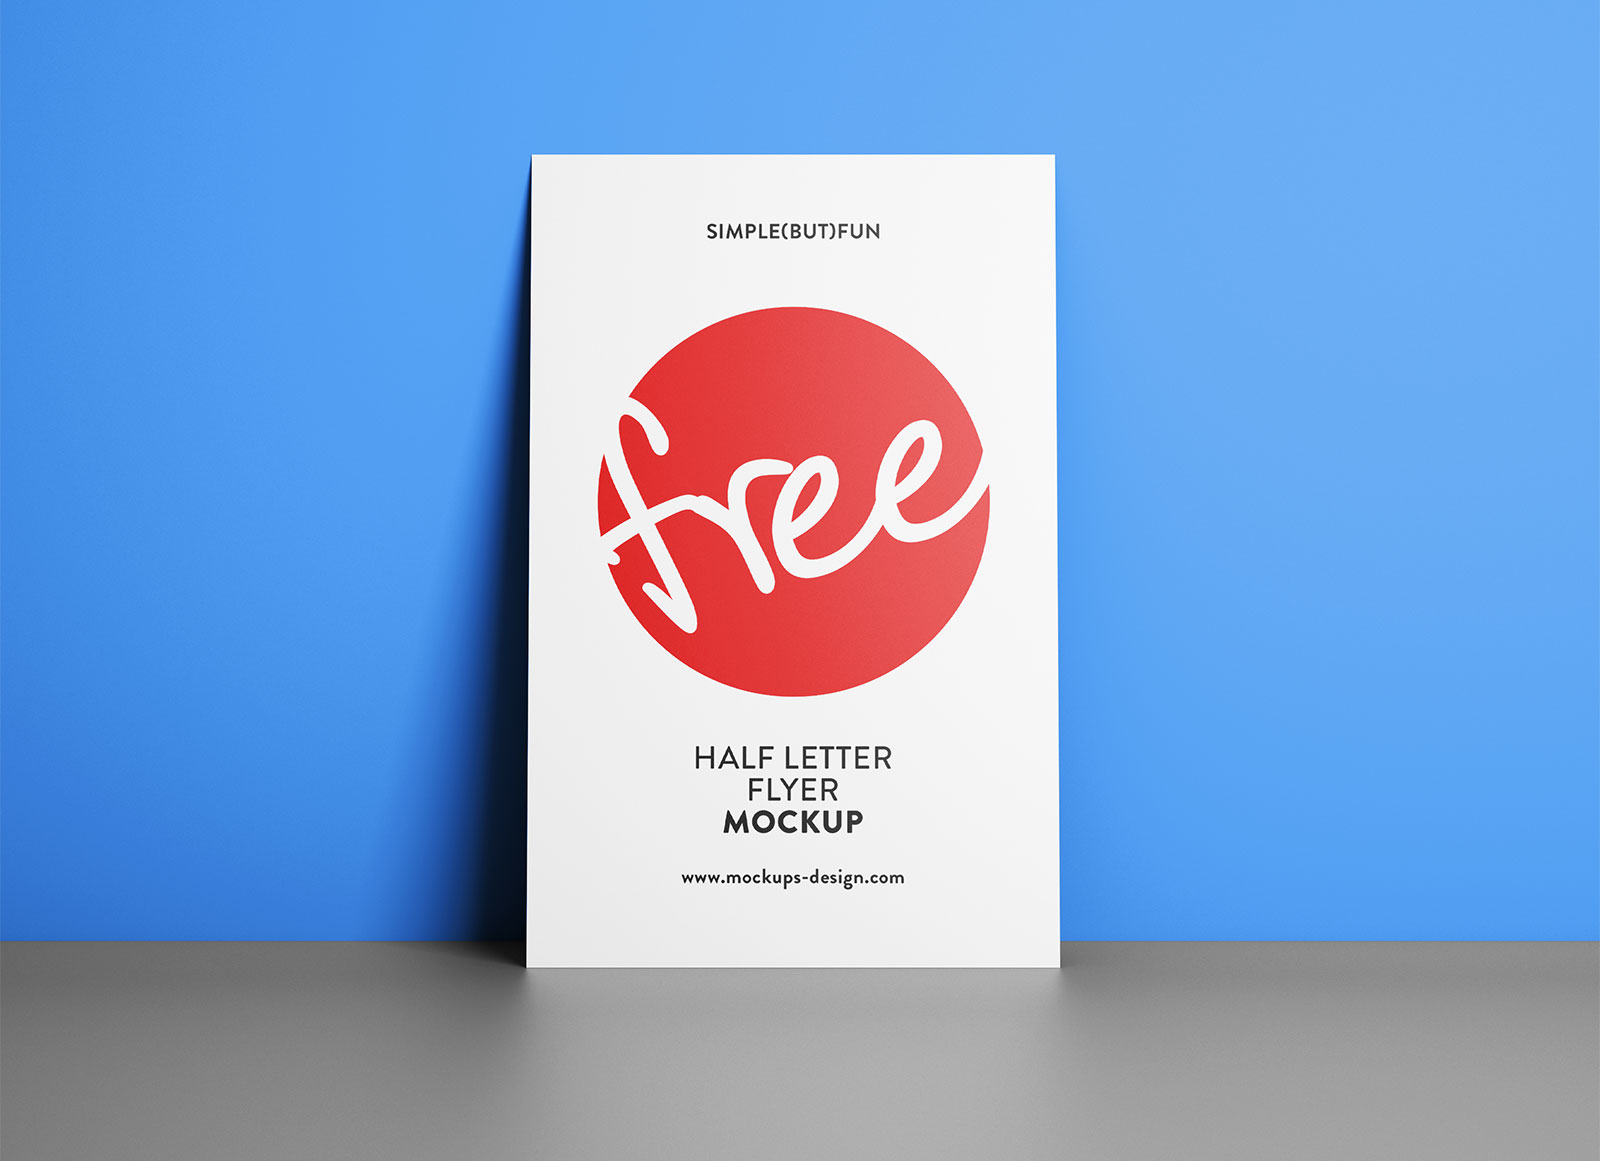 Half Letter Paper Flyer Mockup Set